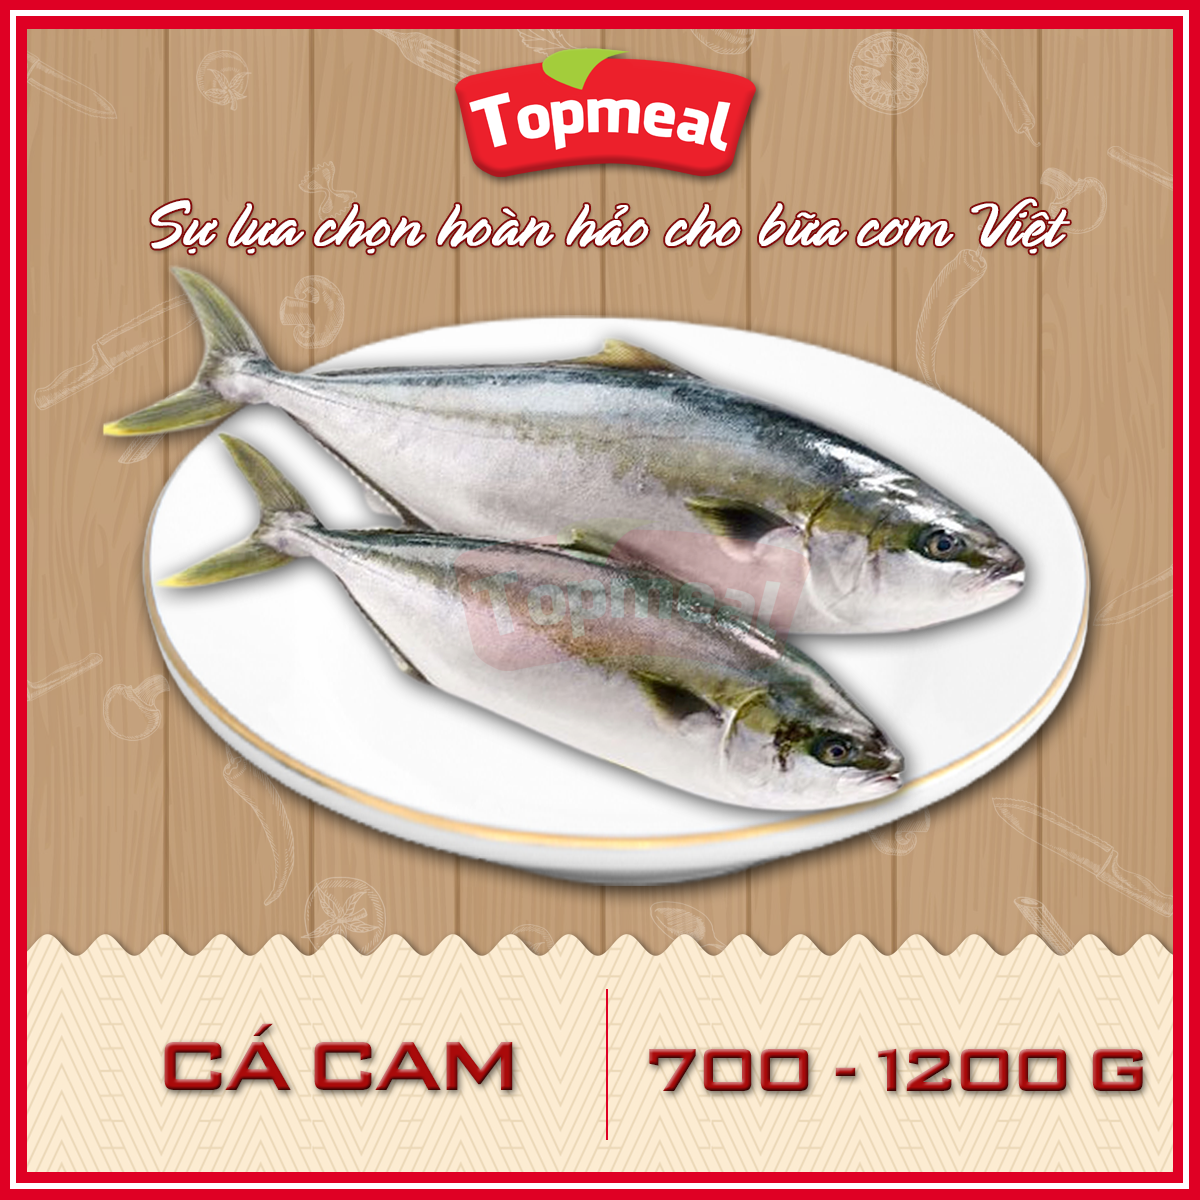 HCM - Cá cam 700 - 1200g - Thích hợp với các món kho, chiên, rim, nướng,